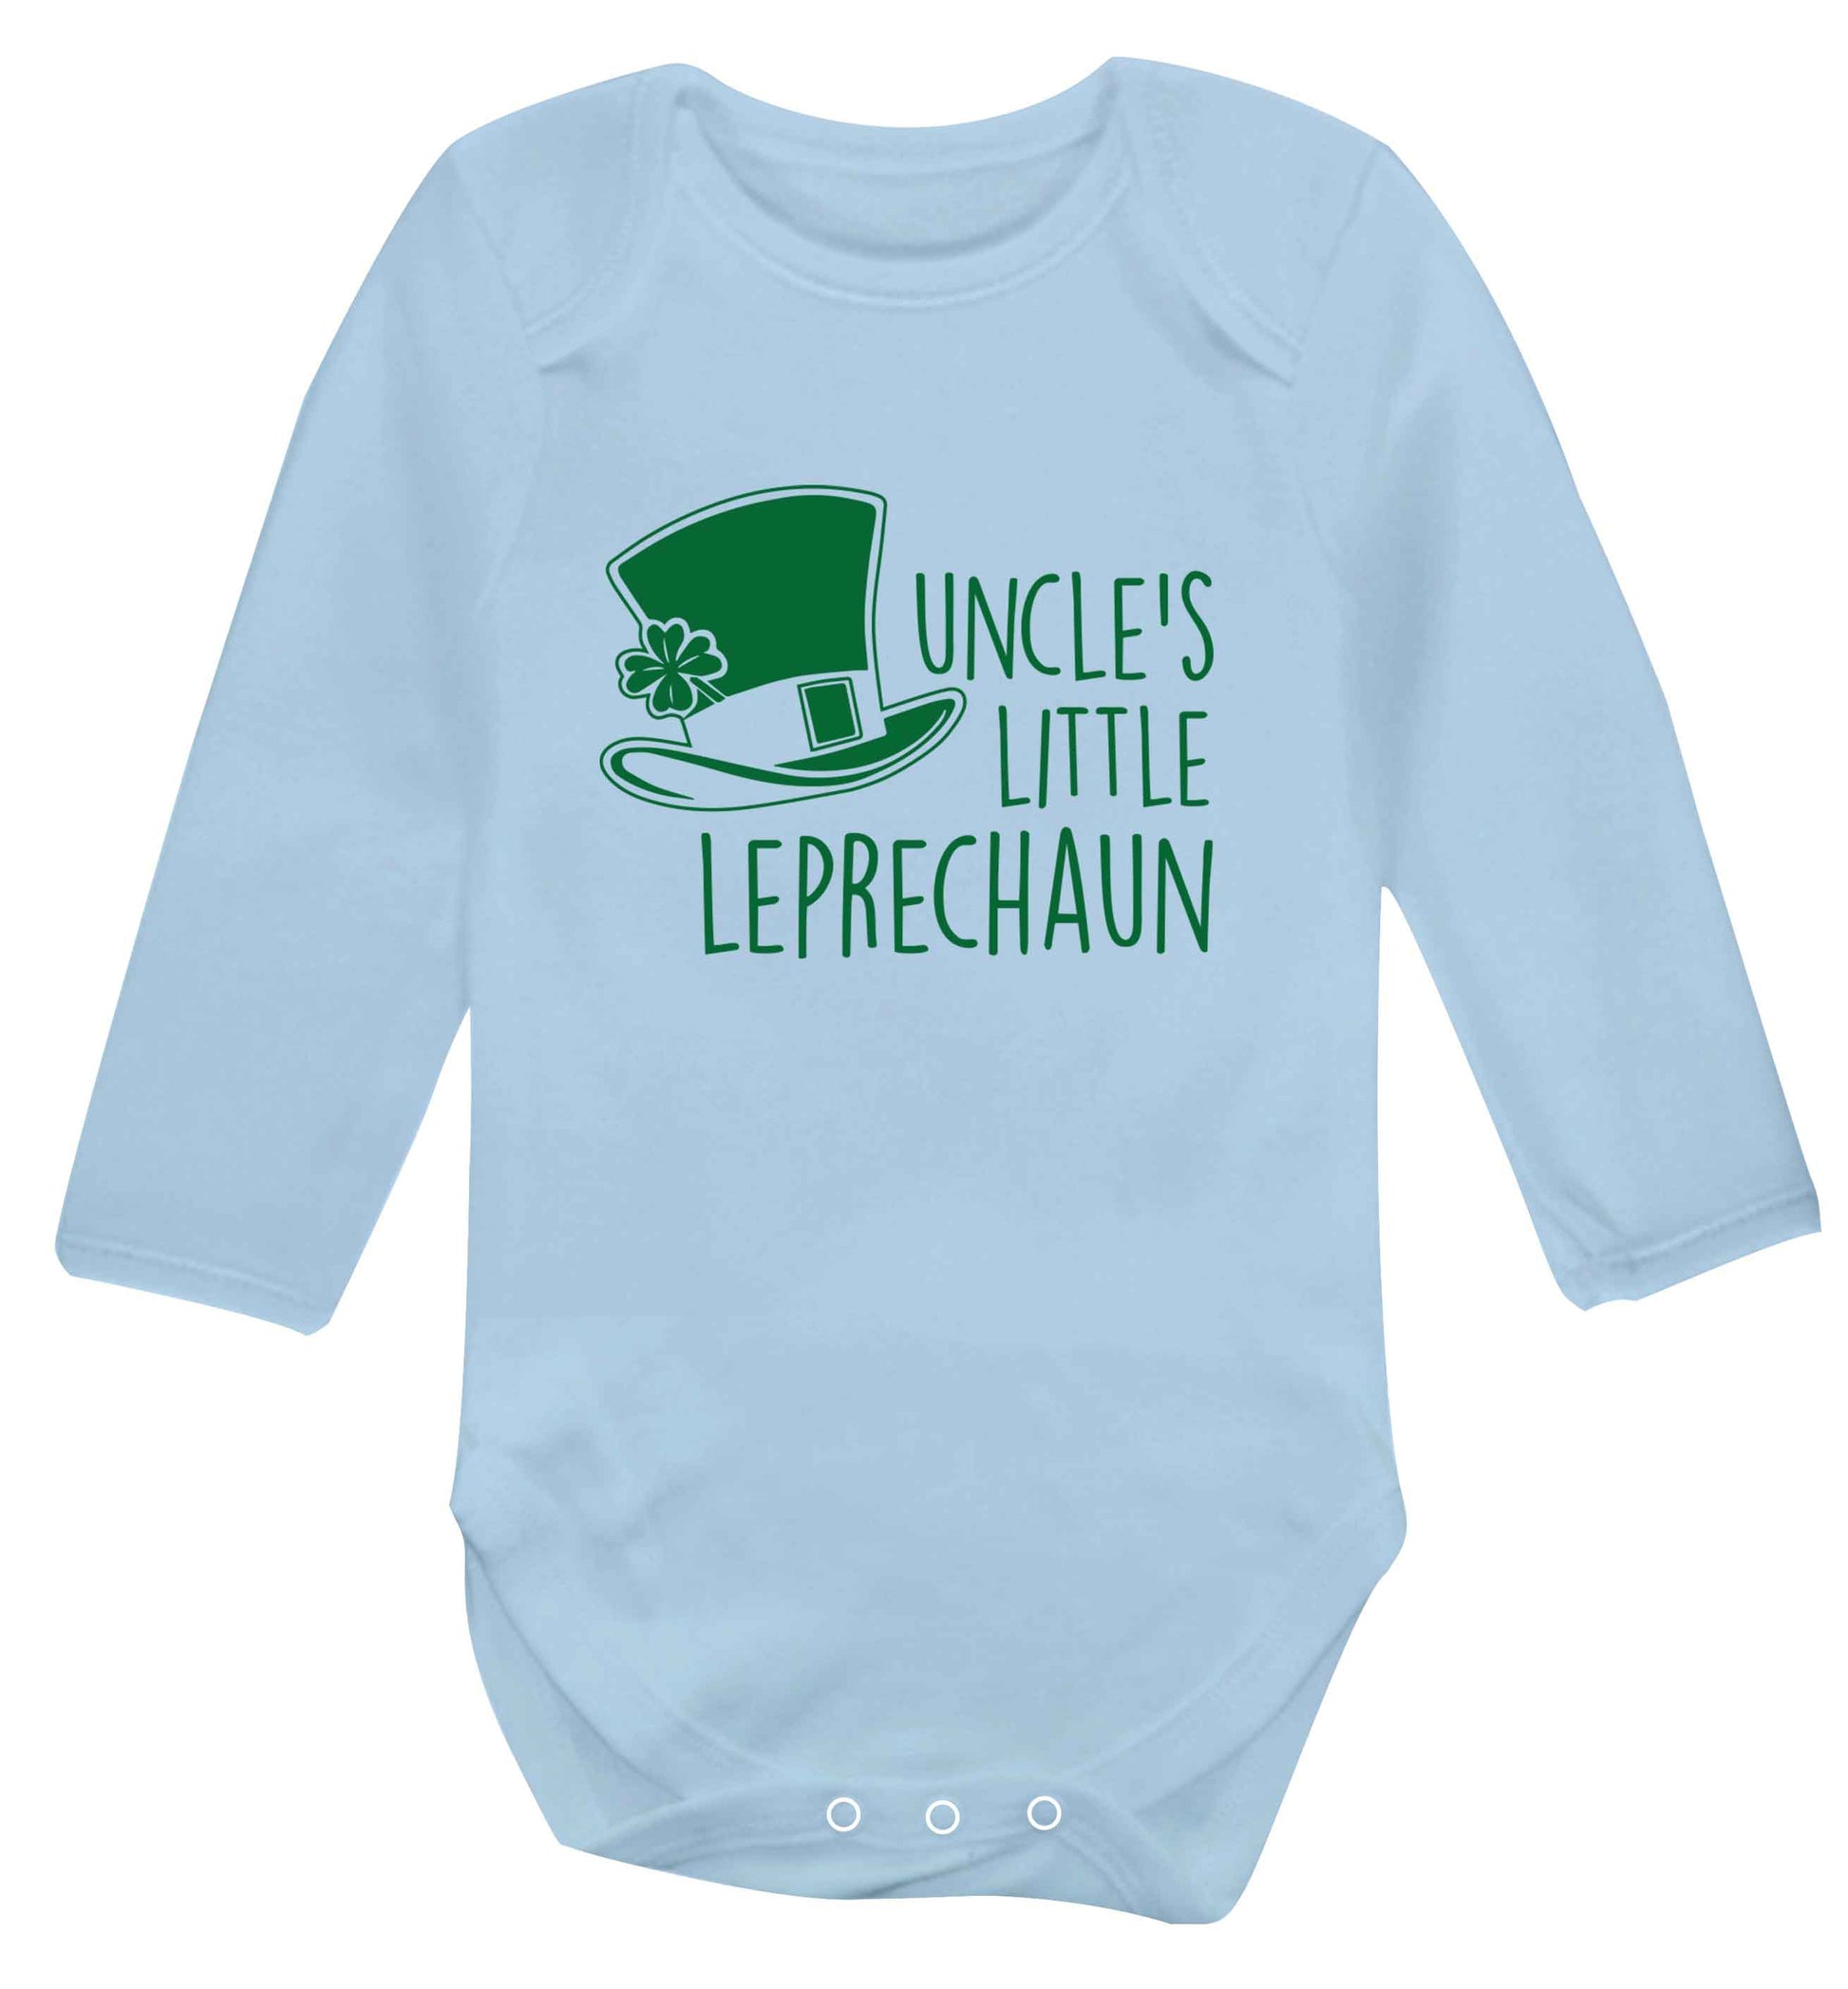 Uncles little leprechaun baby vest long sleeved pale blue 6-12 months